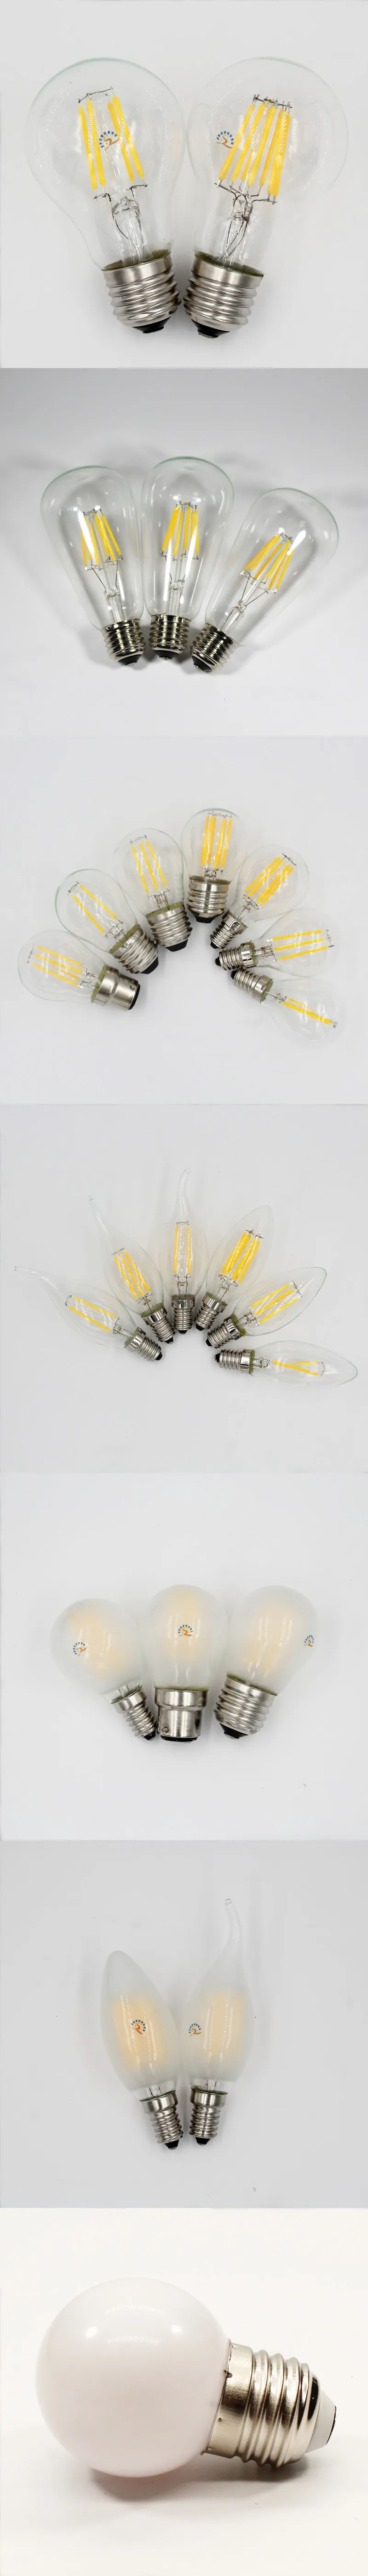 Lote 6 bombillas LED de filamento estilo Edison